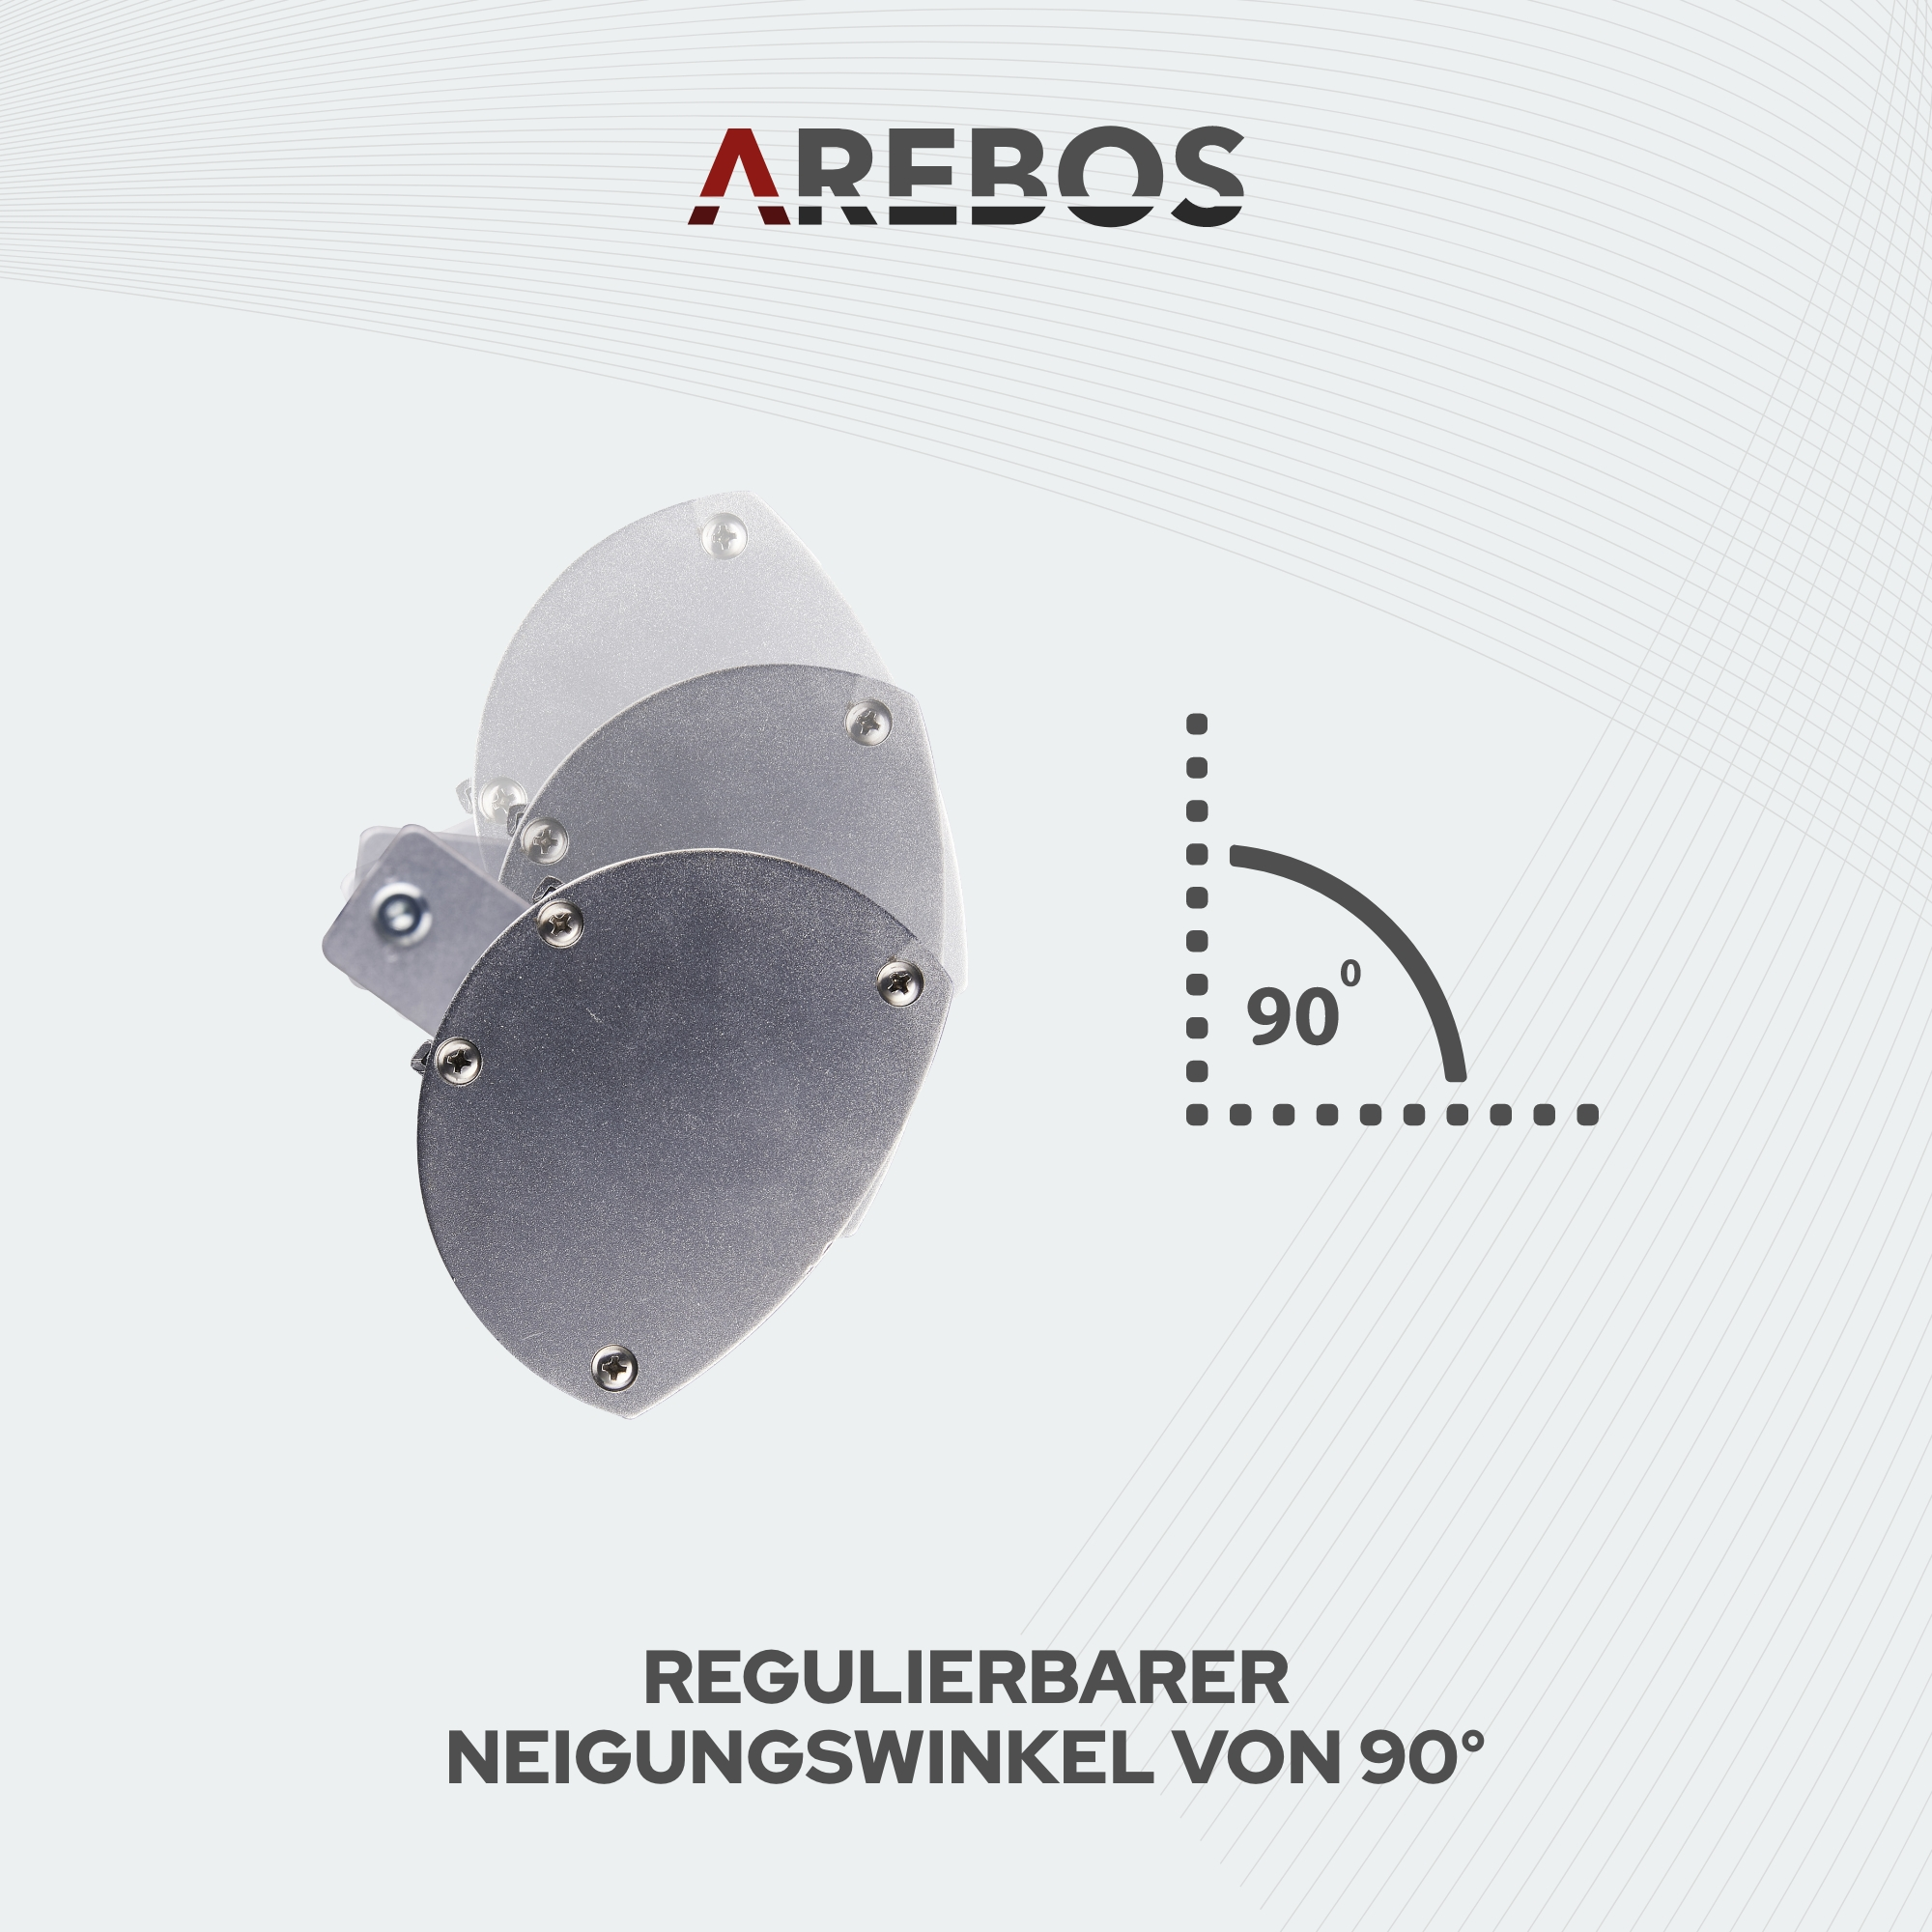 Heizstrahler, AREBOS Infrarot mit & | Silber Stativ Schwenkbar Höhenverstellbar Fernbedienung |